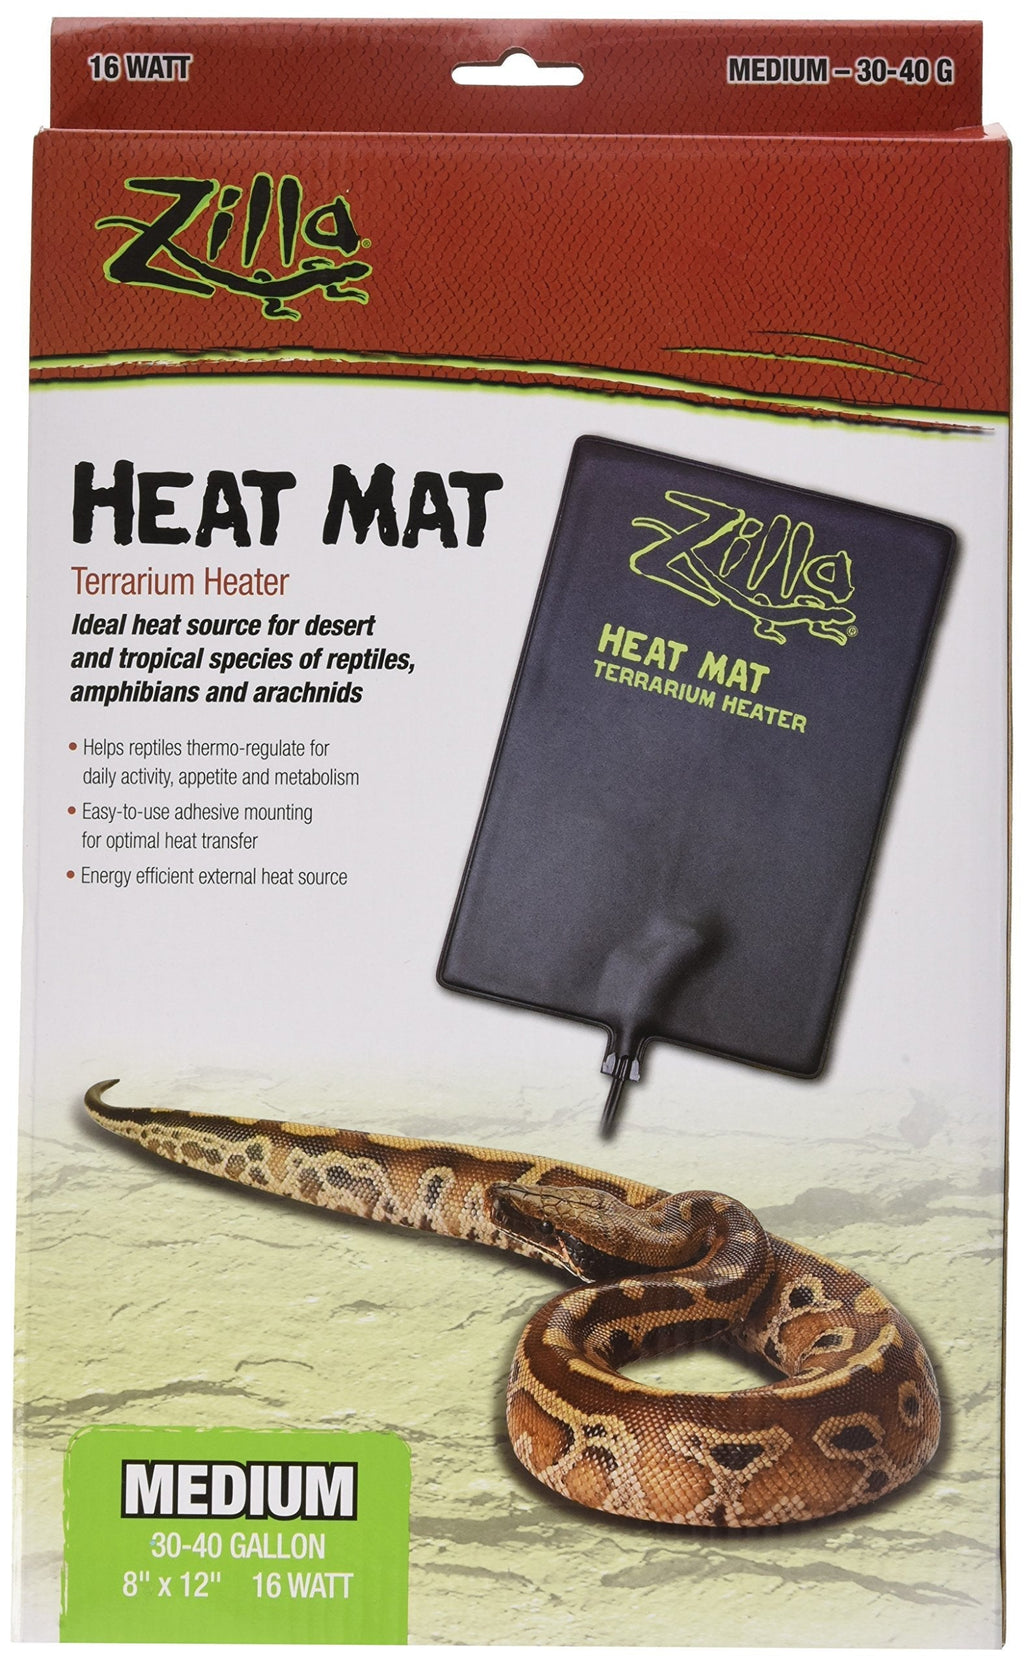 [Australia] - Zilla Heat Mat Terrarium Heater Medium, 8" x 12" 